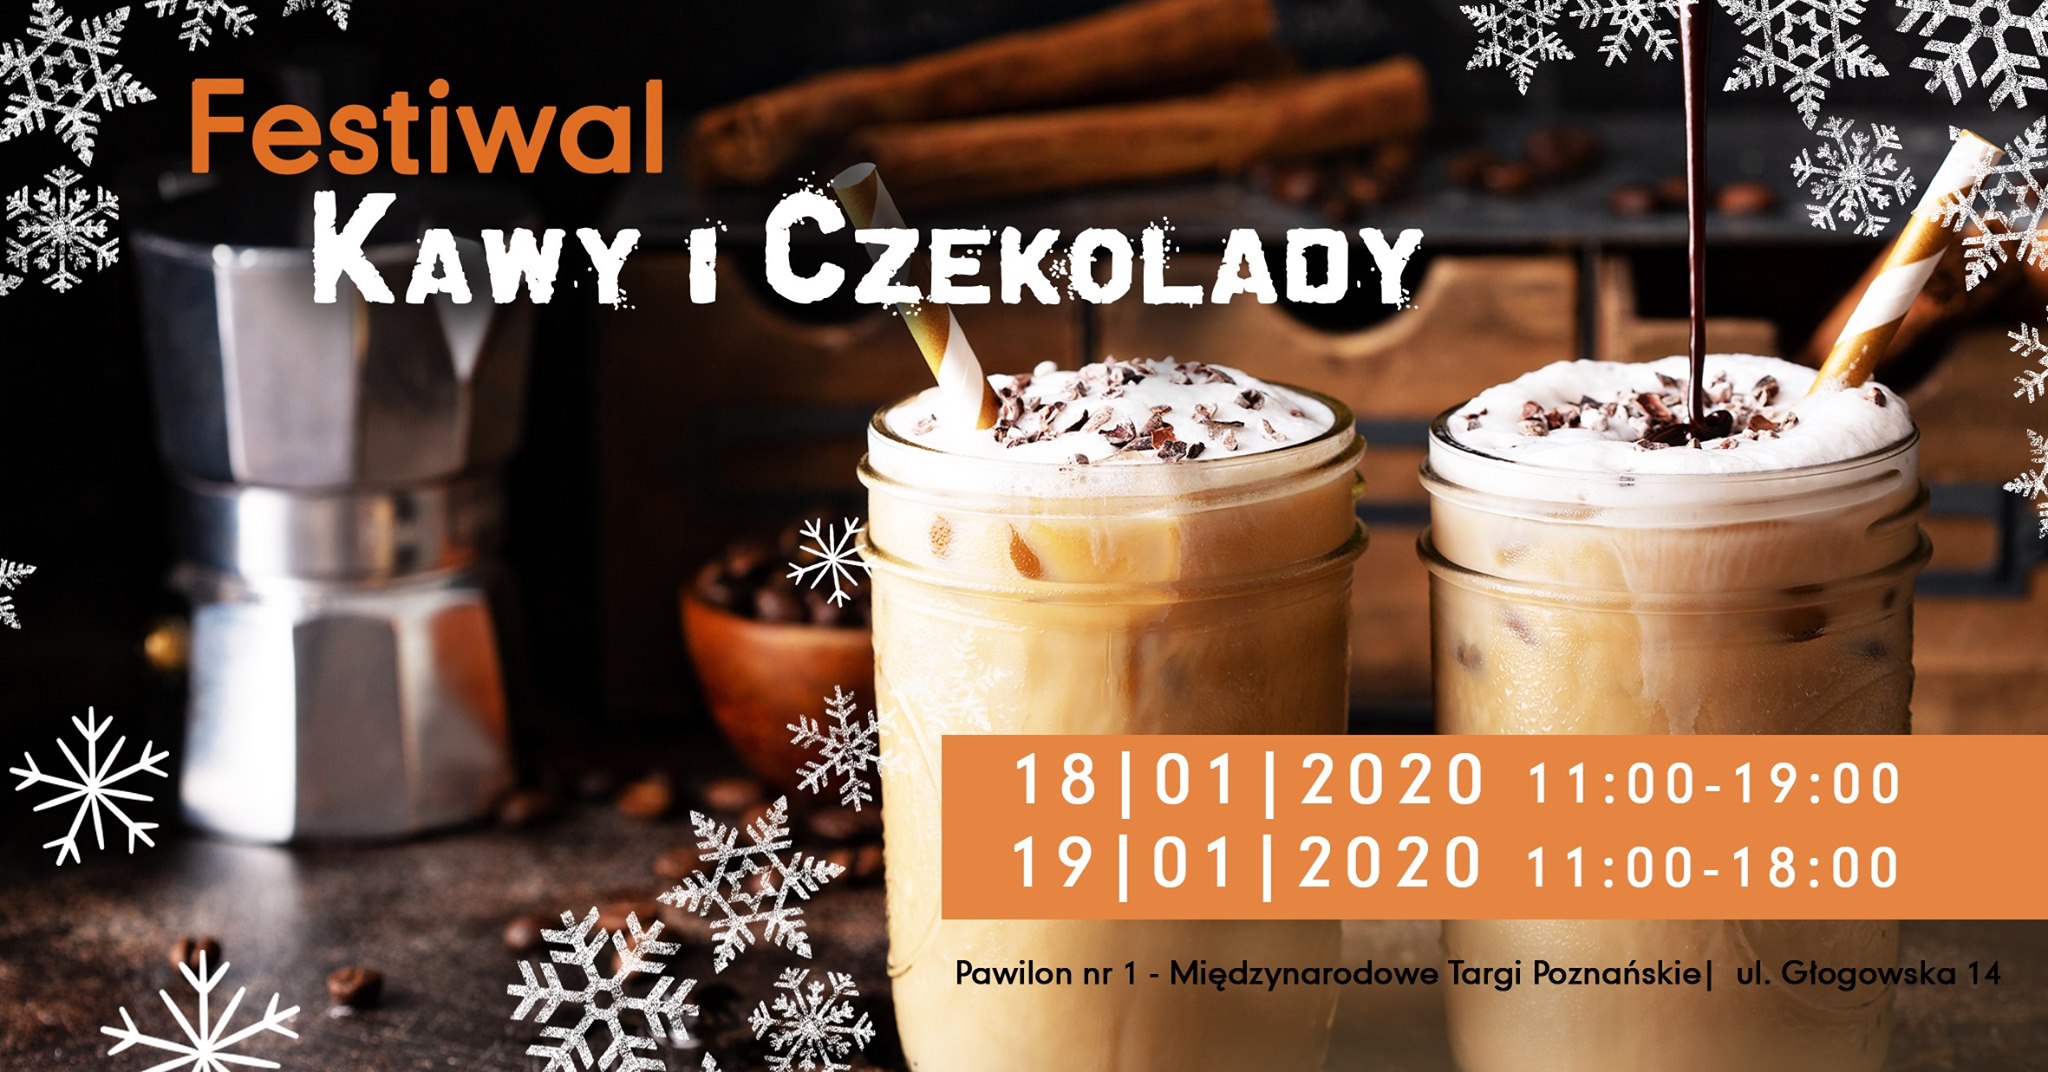 Festiwal Kawy i Czekolady zawita do Poznania!